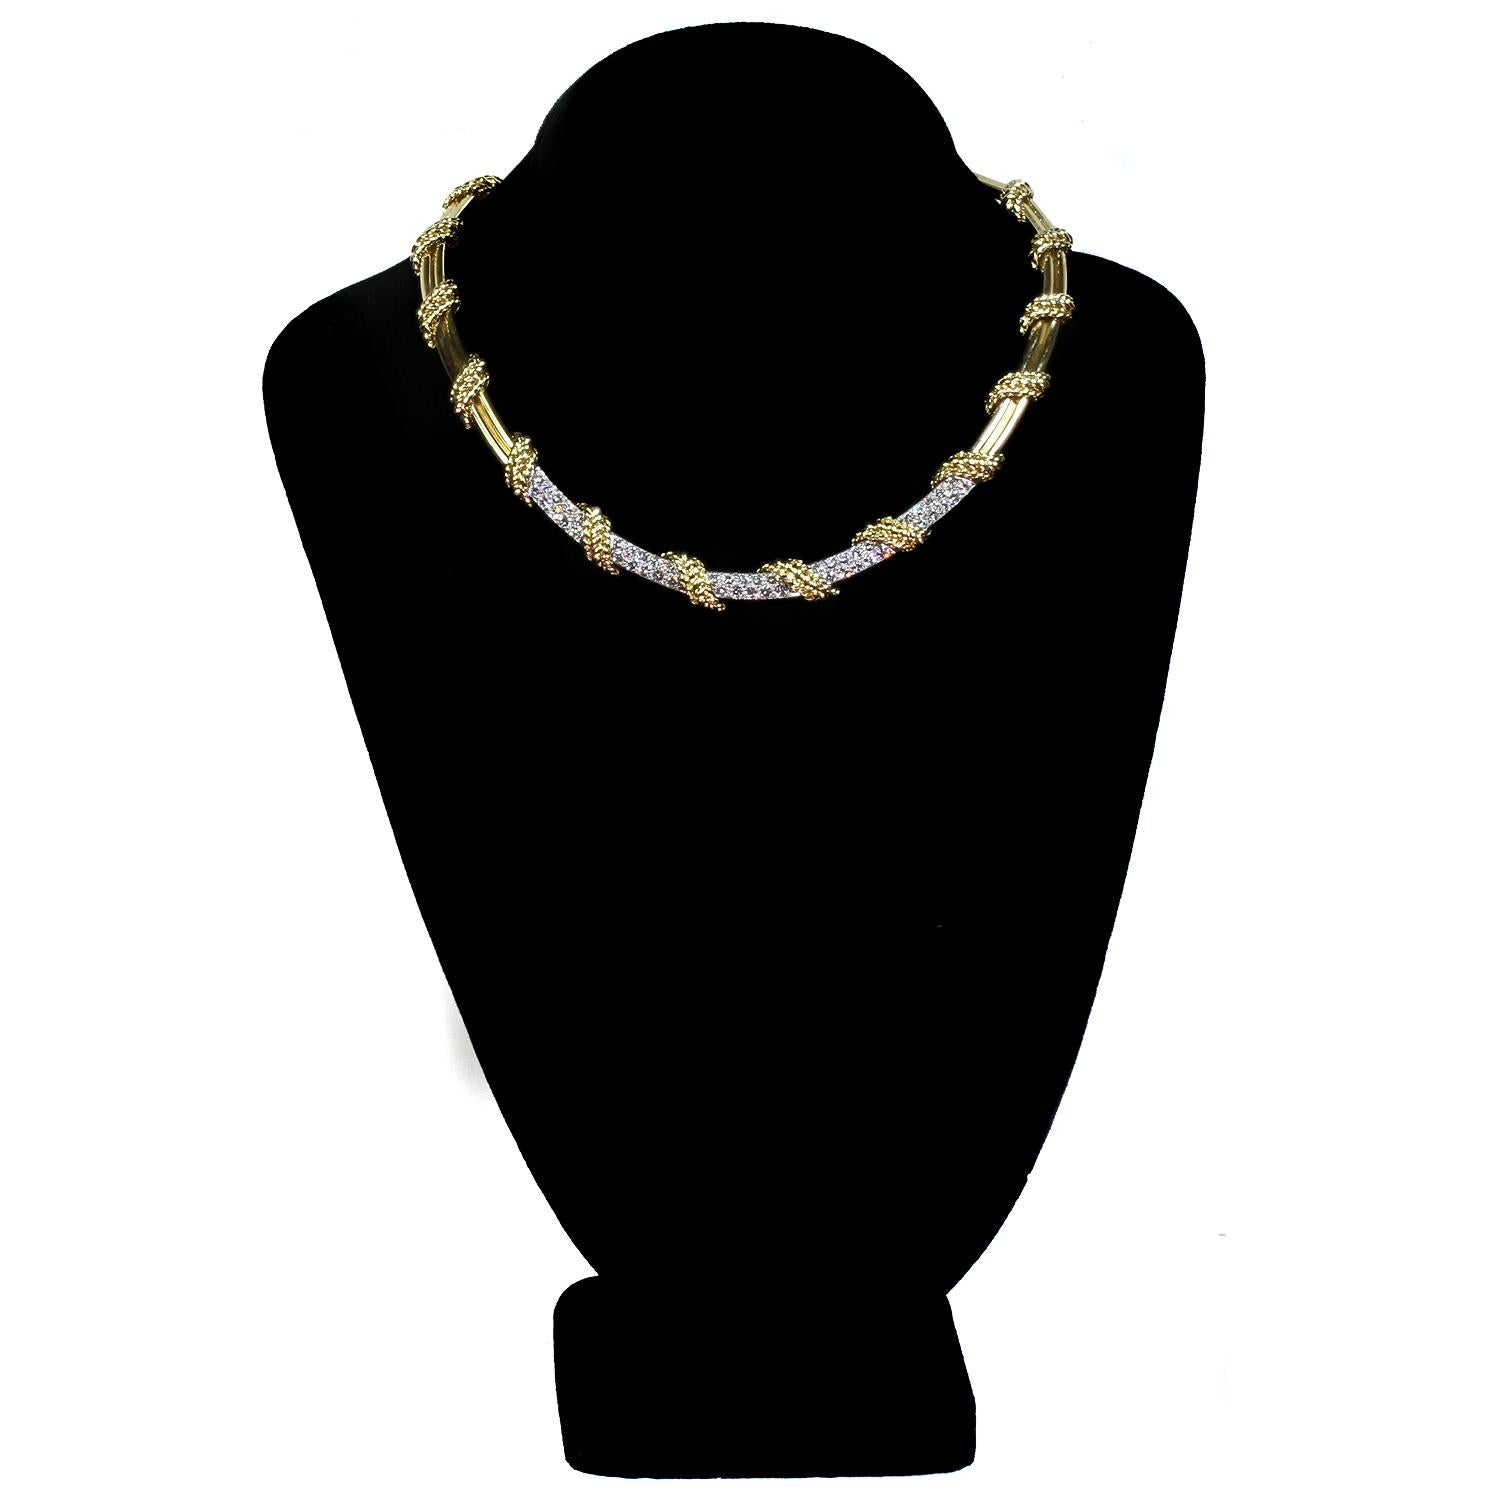 Brilliant Cut Tiffany & Co. Diamond 18 Yellow & White Gold Necklace